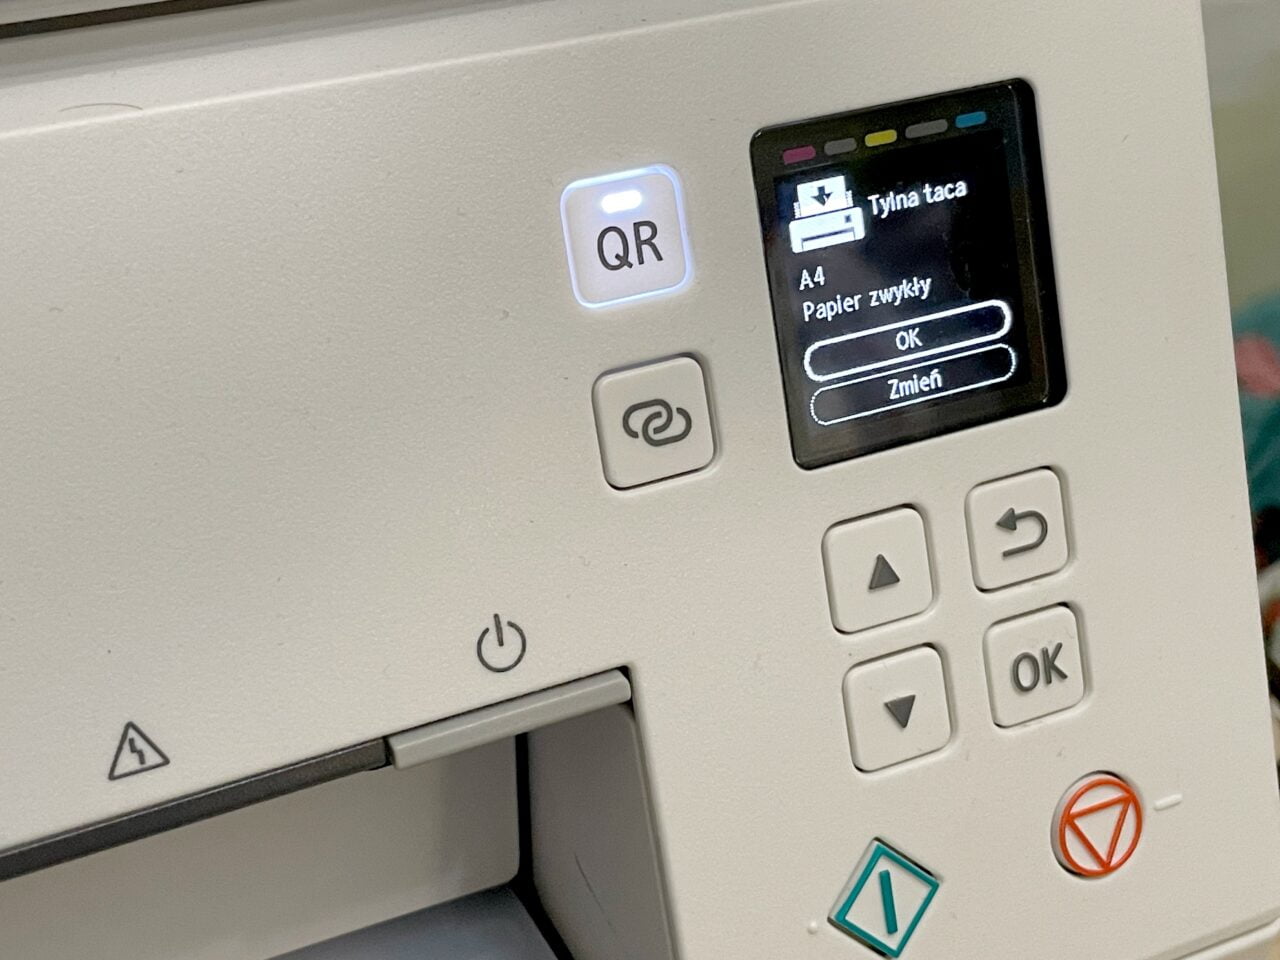 Panel sterowania drukarki z wyświetlaczem pokazującym komunikat "Tłyna taca, A4, Papier zwykły", przyciskami nawigacyjnymi oraz symbolami QR i zasilania.